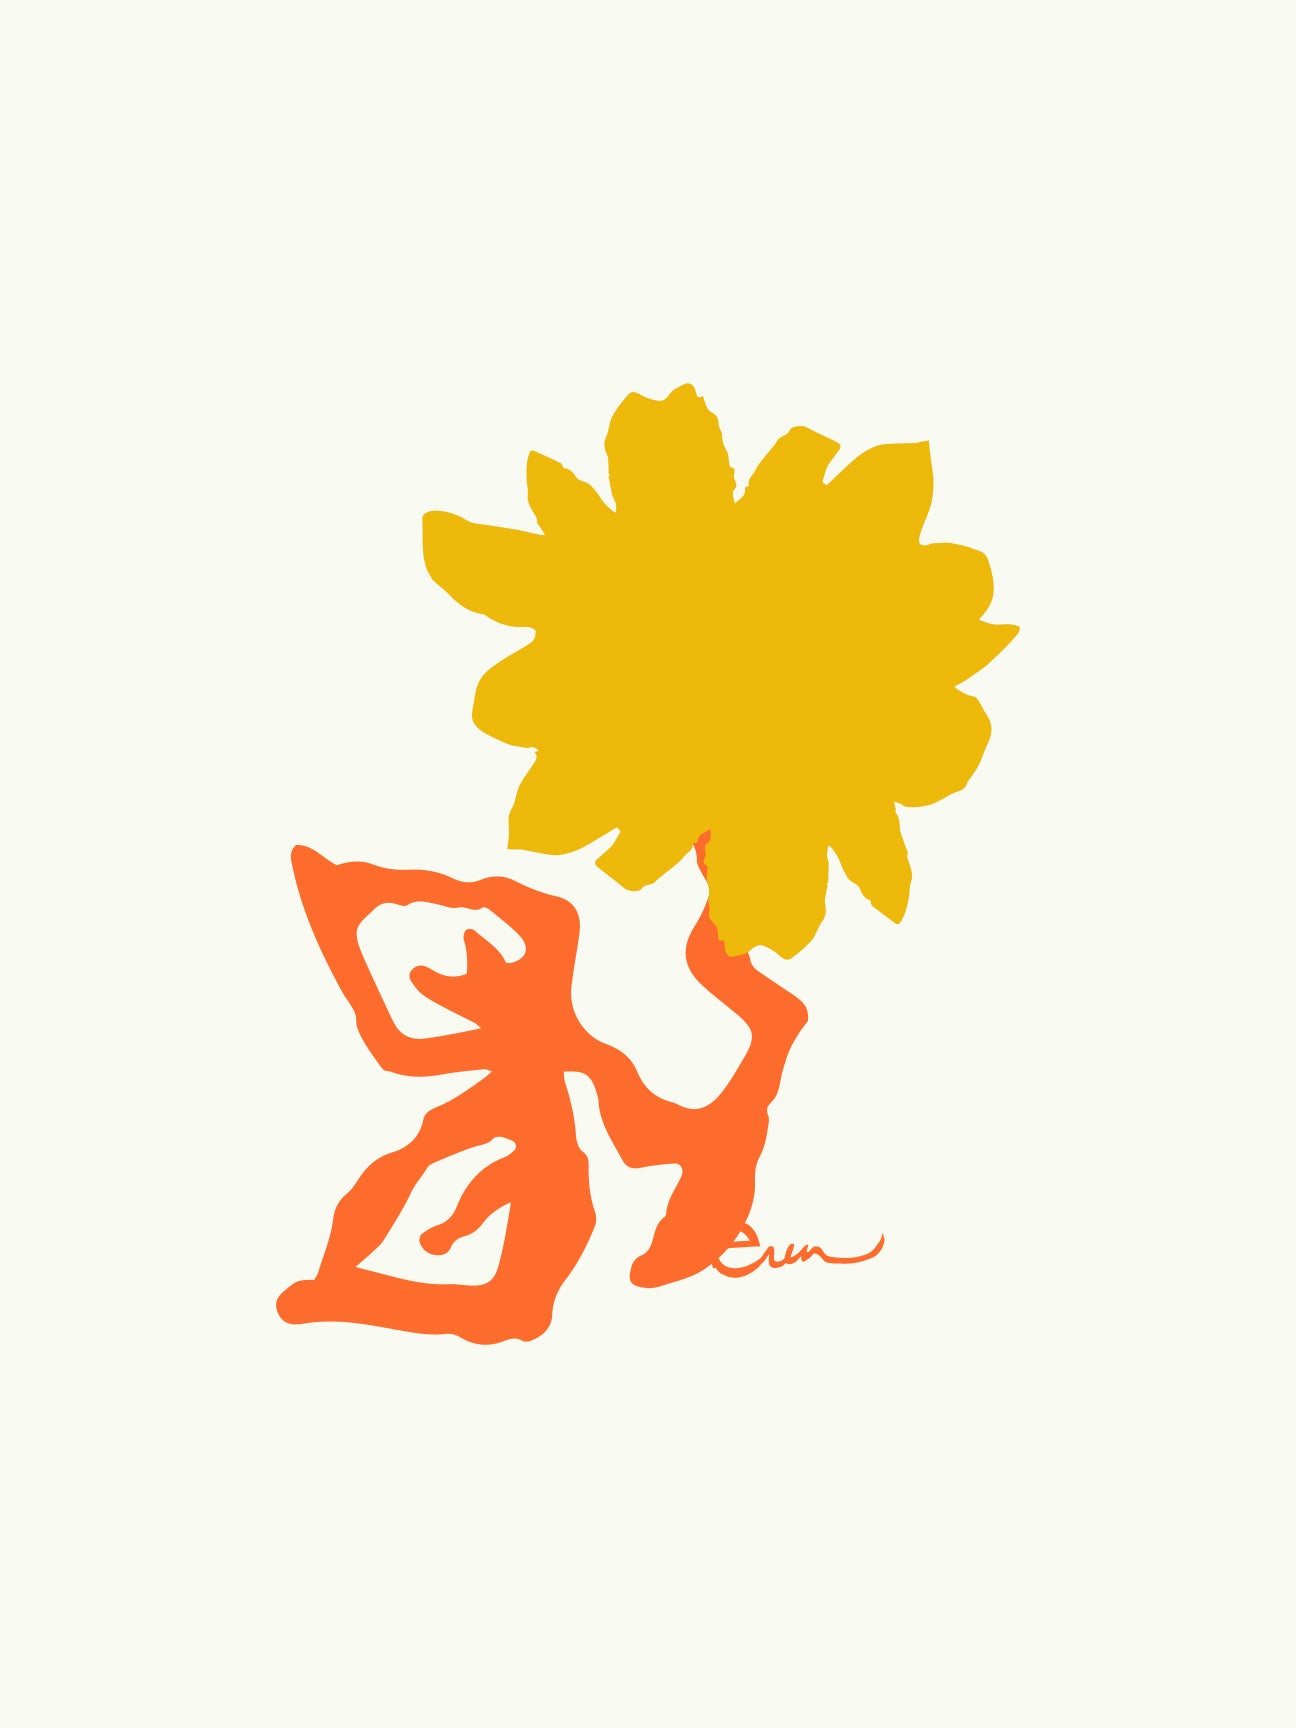 SUNNY FLOWER GICLEE PAPER ART PRINT